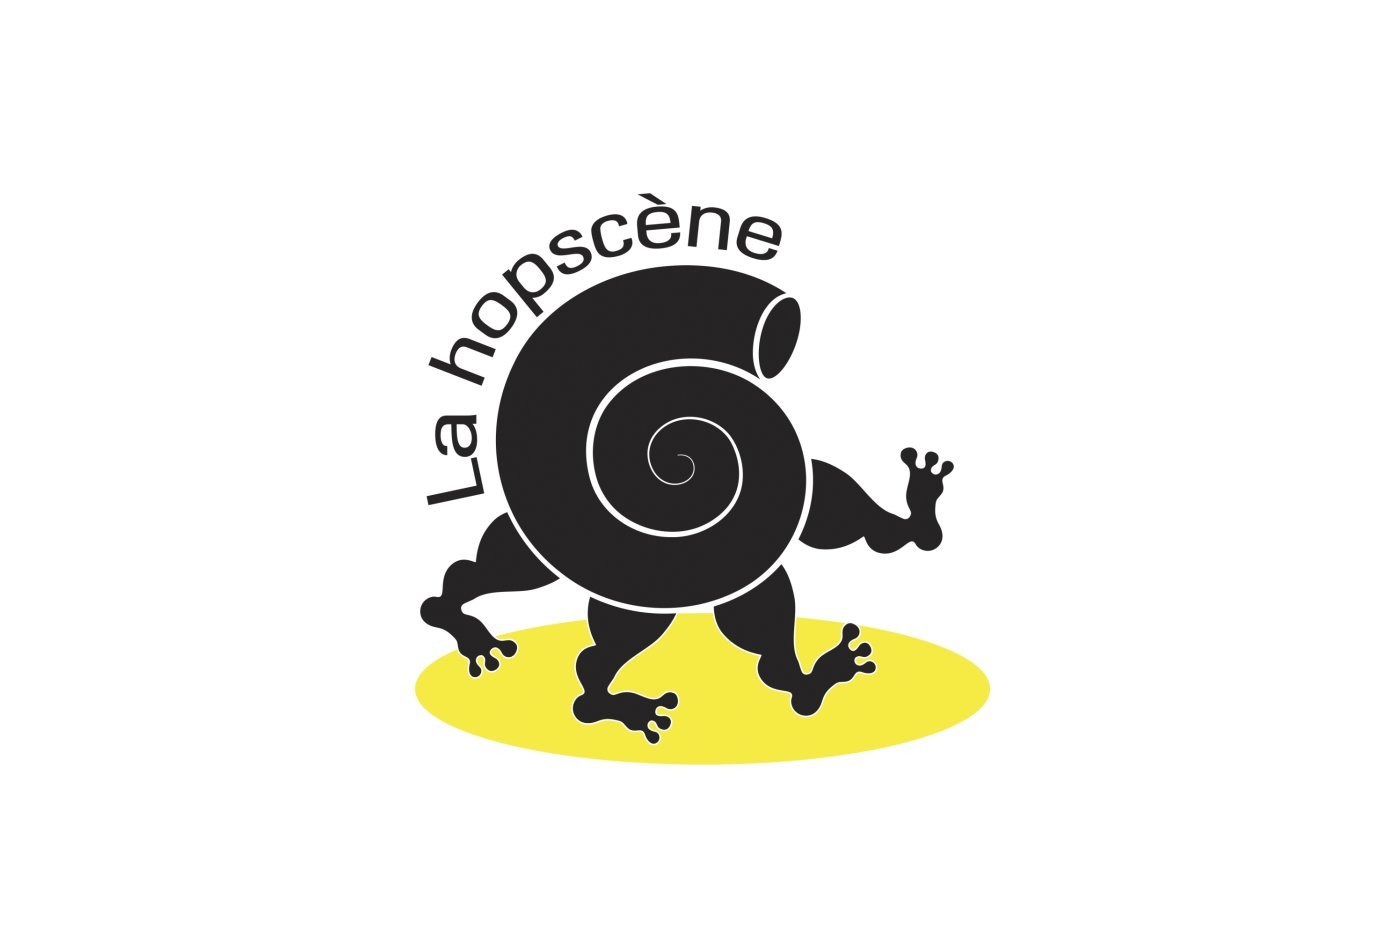 Le logo de la Hopscène, imaginé par le graphiste Yvan Gogniat, a été remanié pour signifier qu’elle n’est plus qu’une coquille vide.